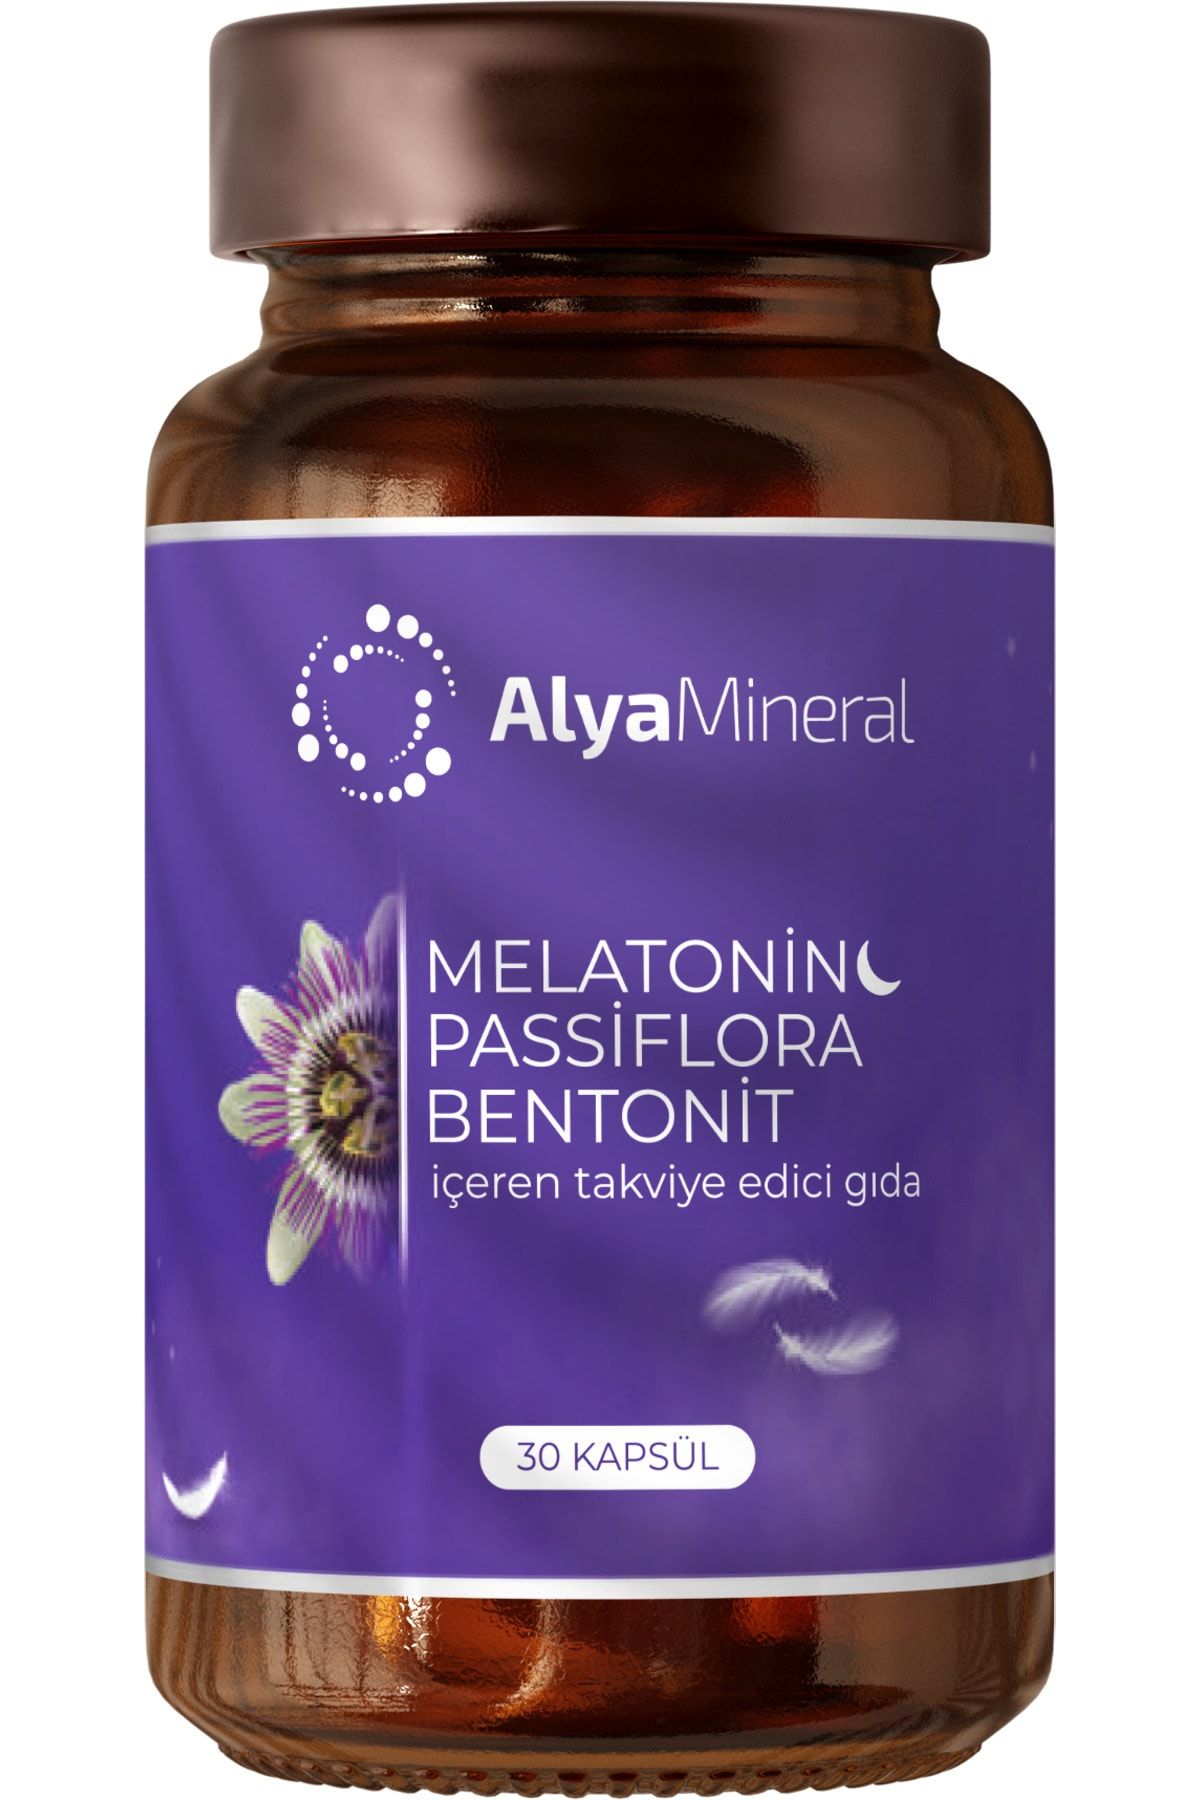 alya mineral Melatonin Passiflora Bentonit İçeren Takviye Edici Gıda